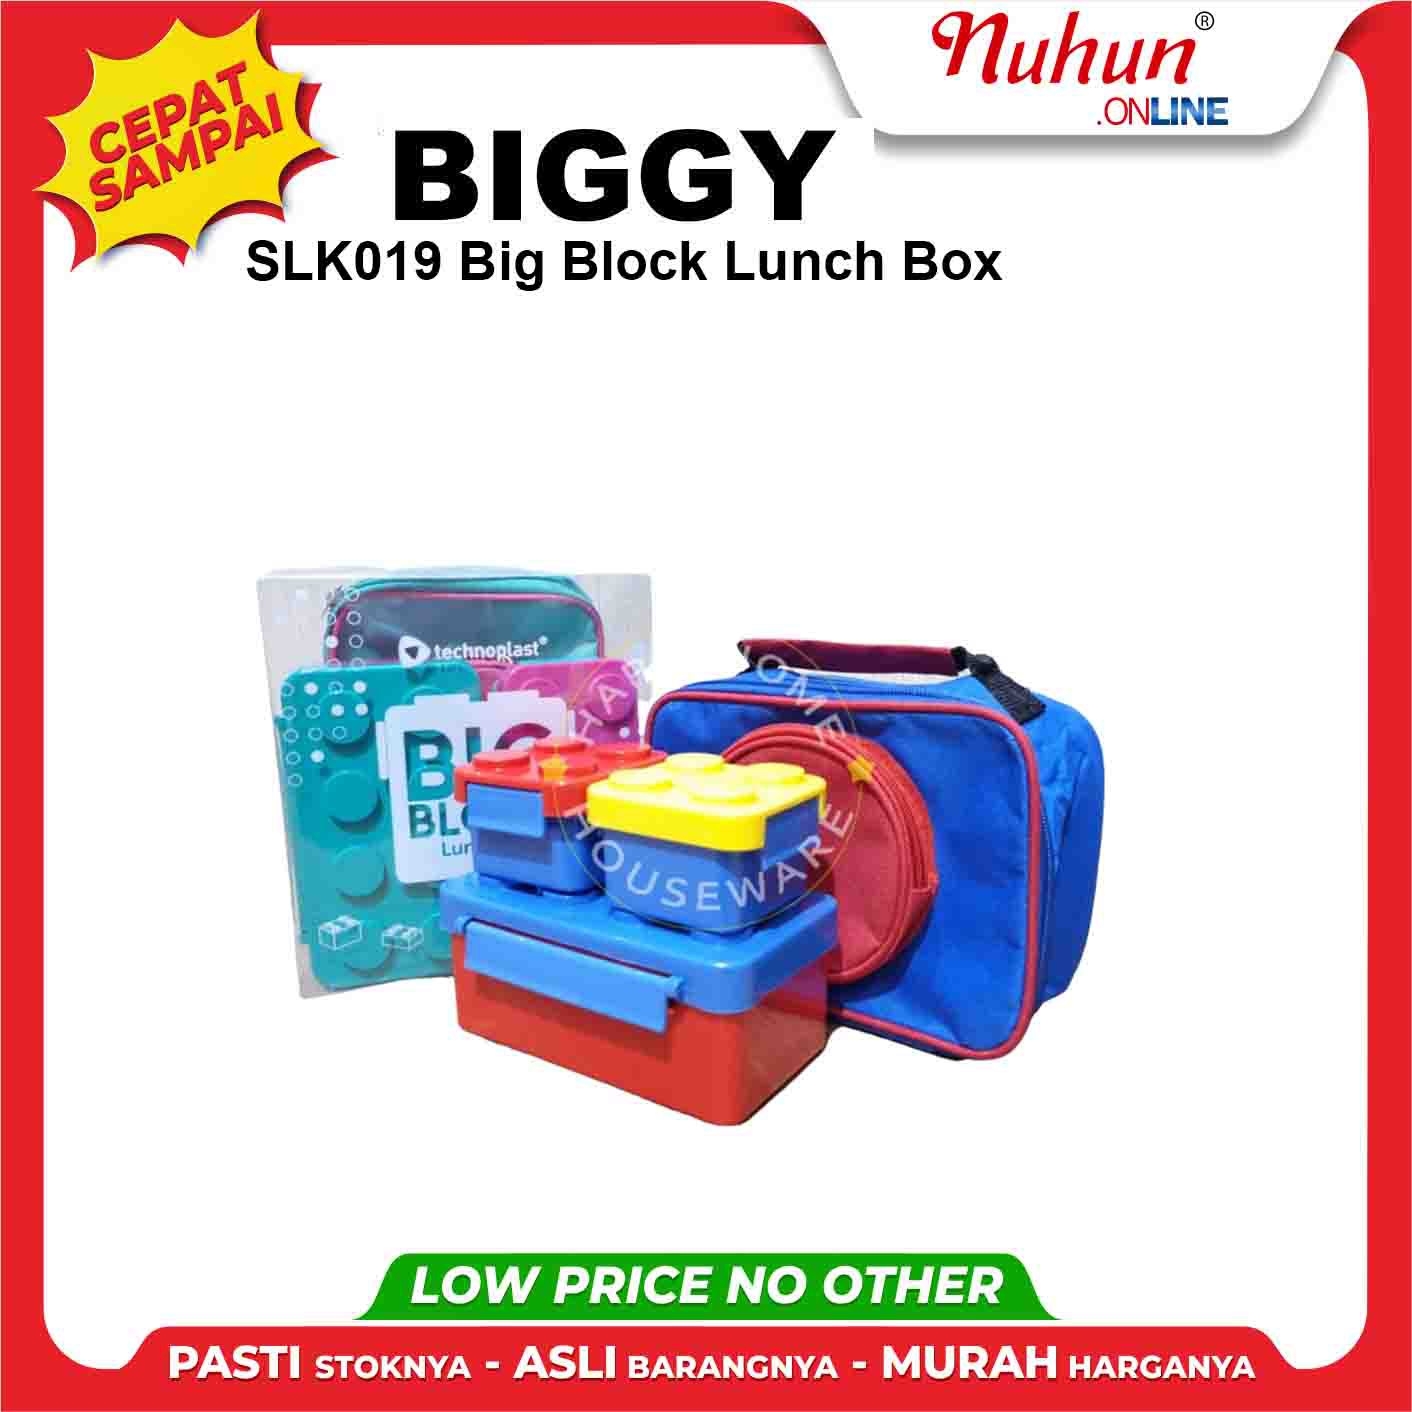 SLK019 Big Block Lunch Box